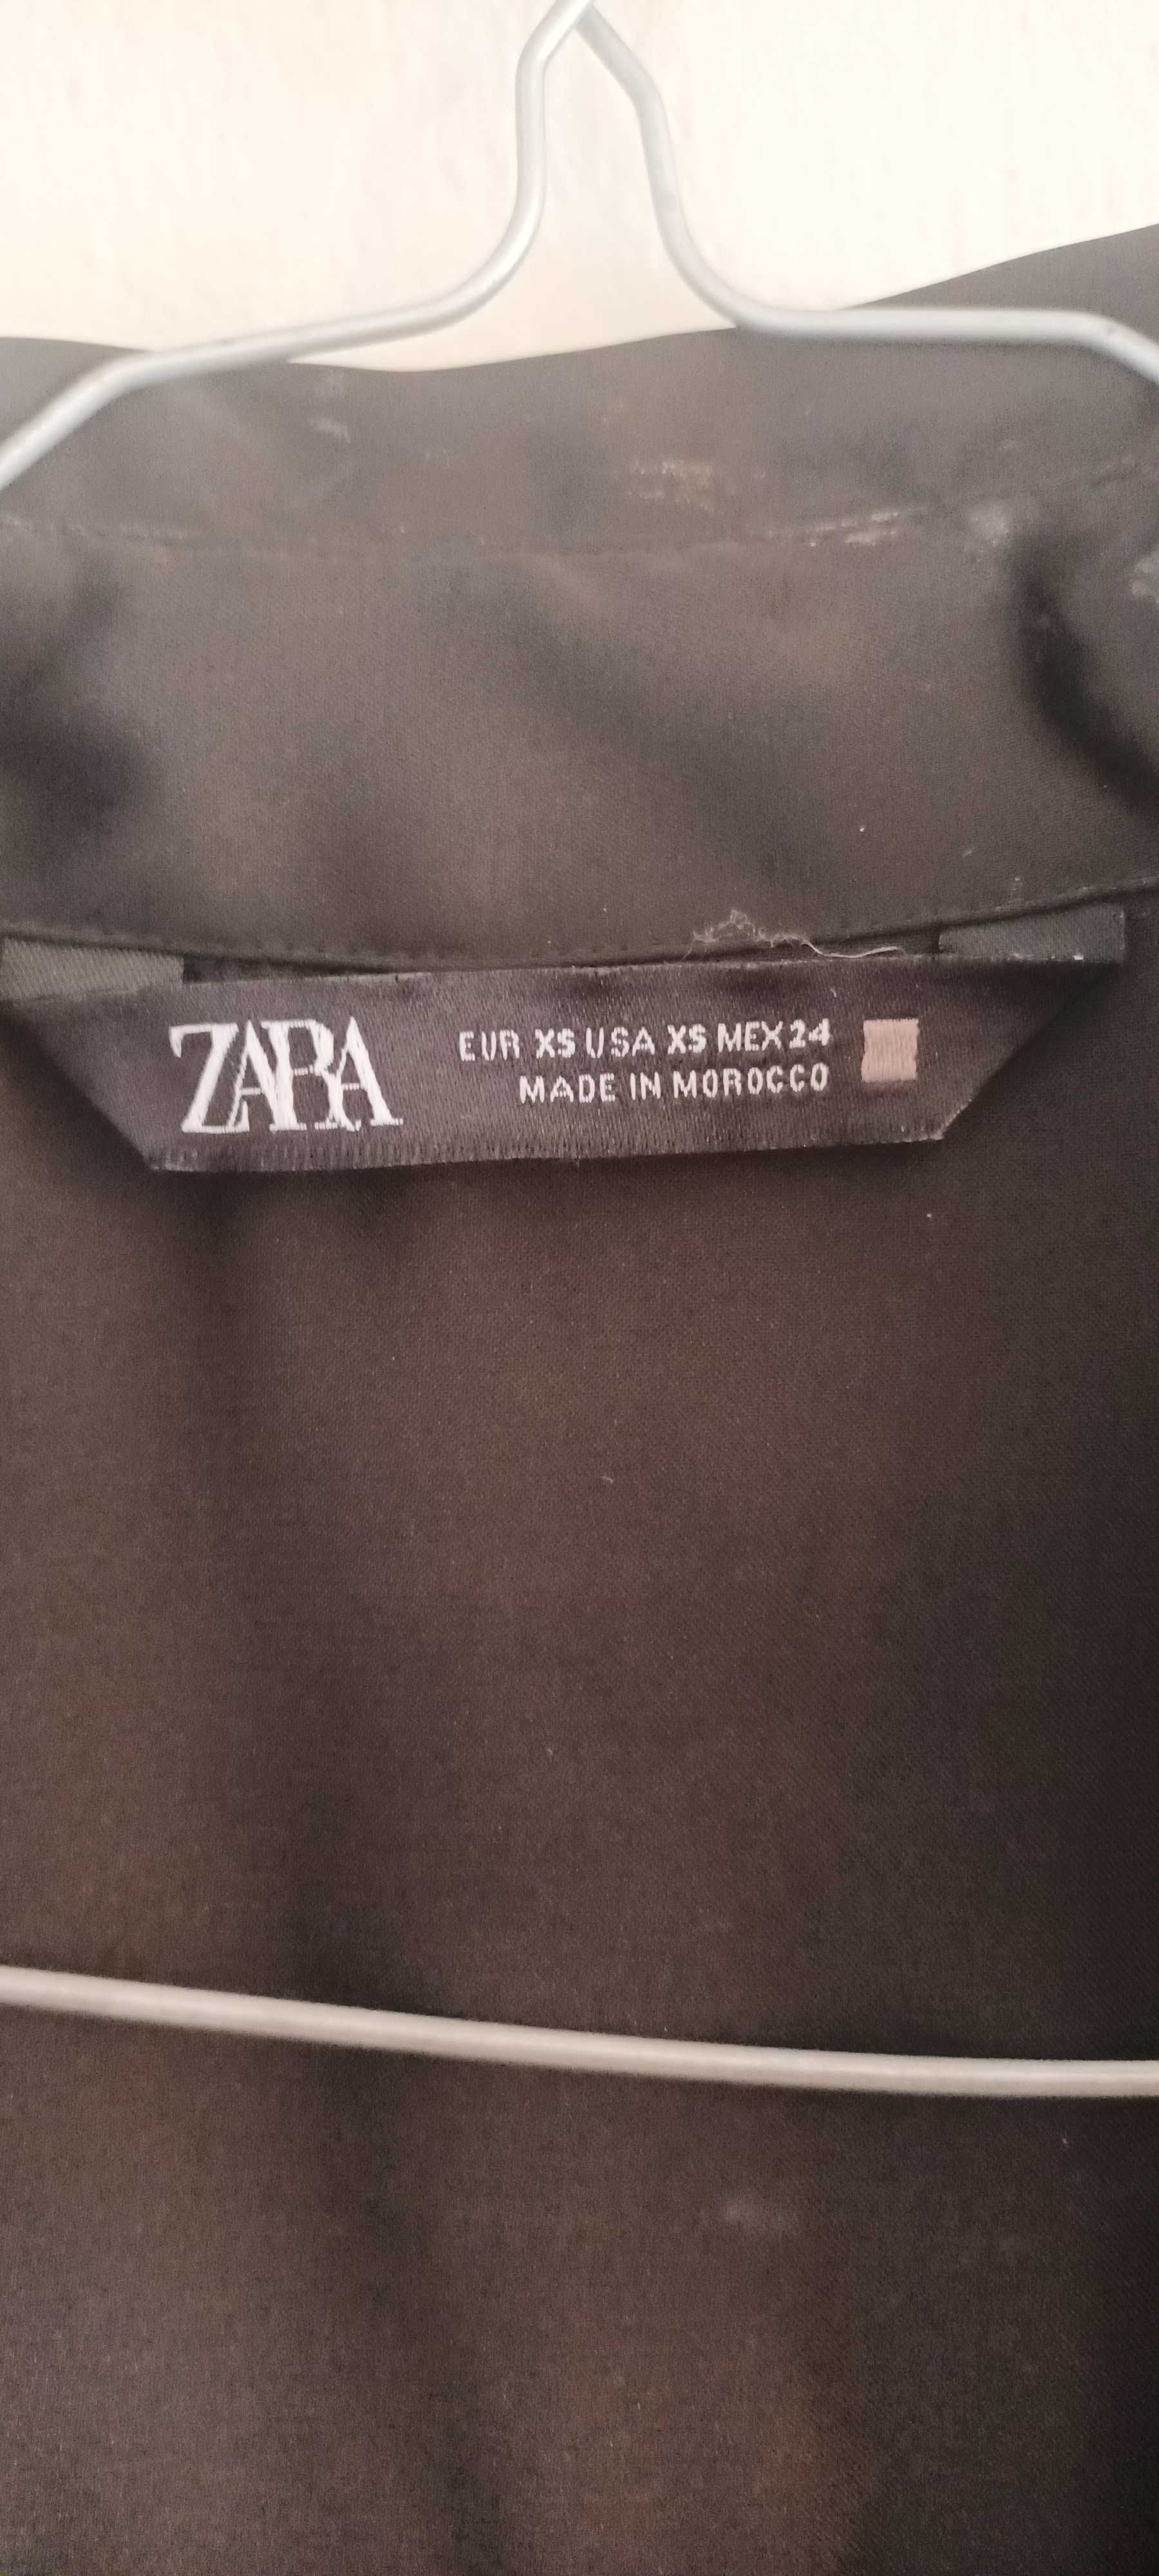 Blusas de cetim preta da Zara desta coleção, modelo muito vendido